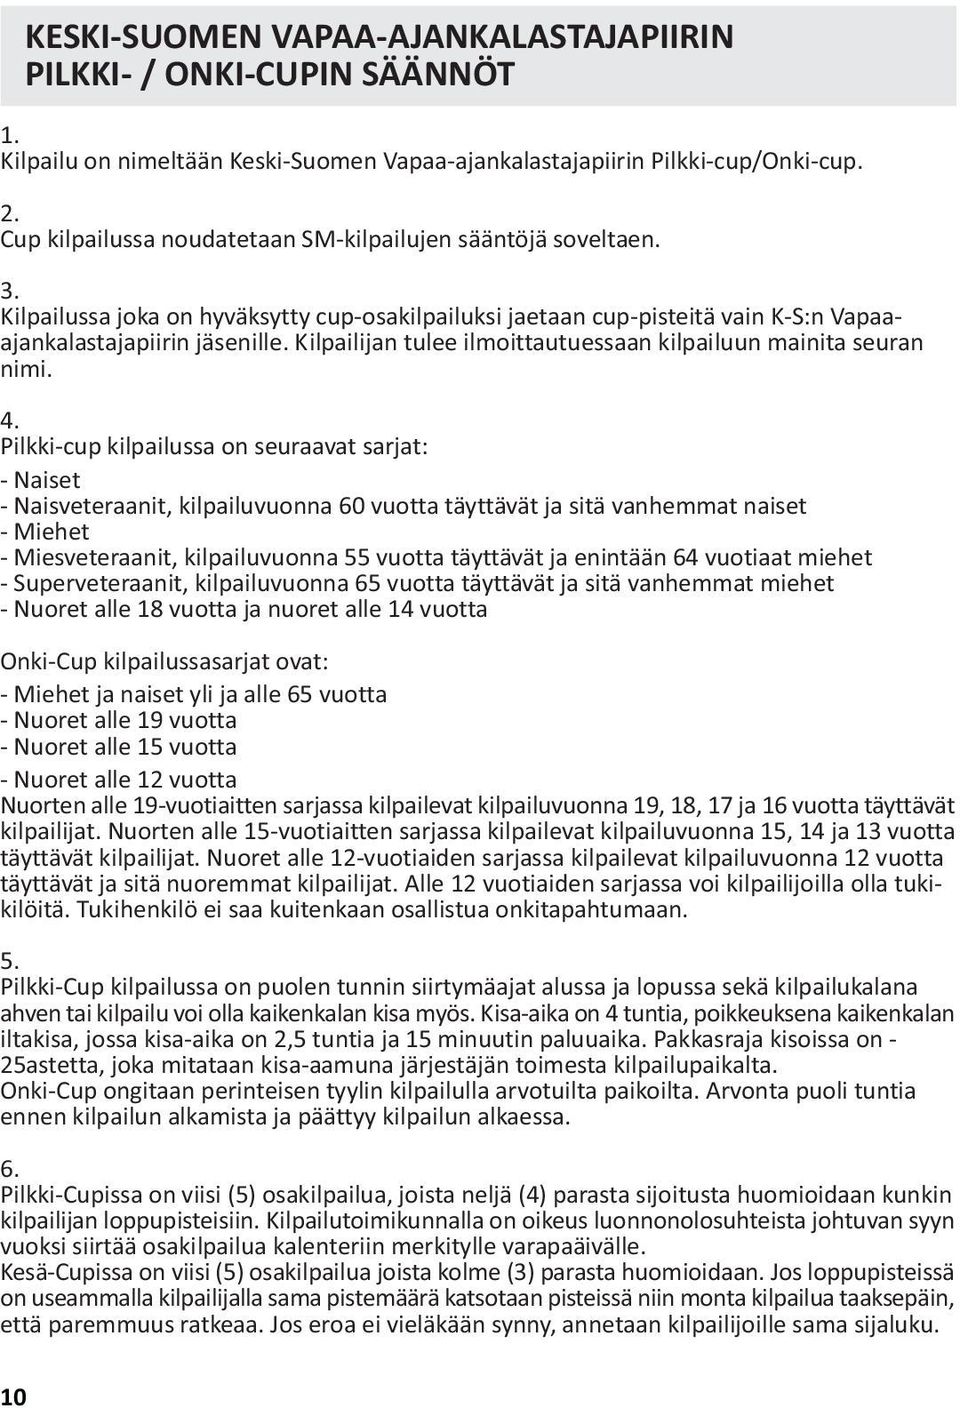 Keski-Suomen Vapaa-ajankalastajapiiri TOIMINTAKALENTERI. - PDF Ilmainen  lataus